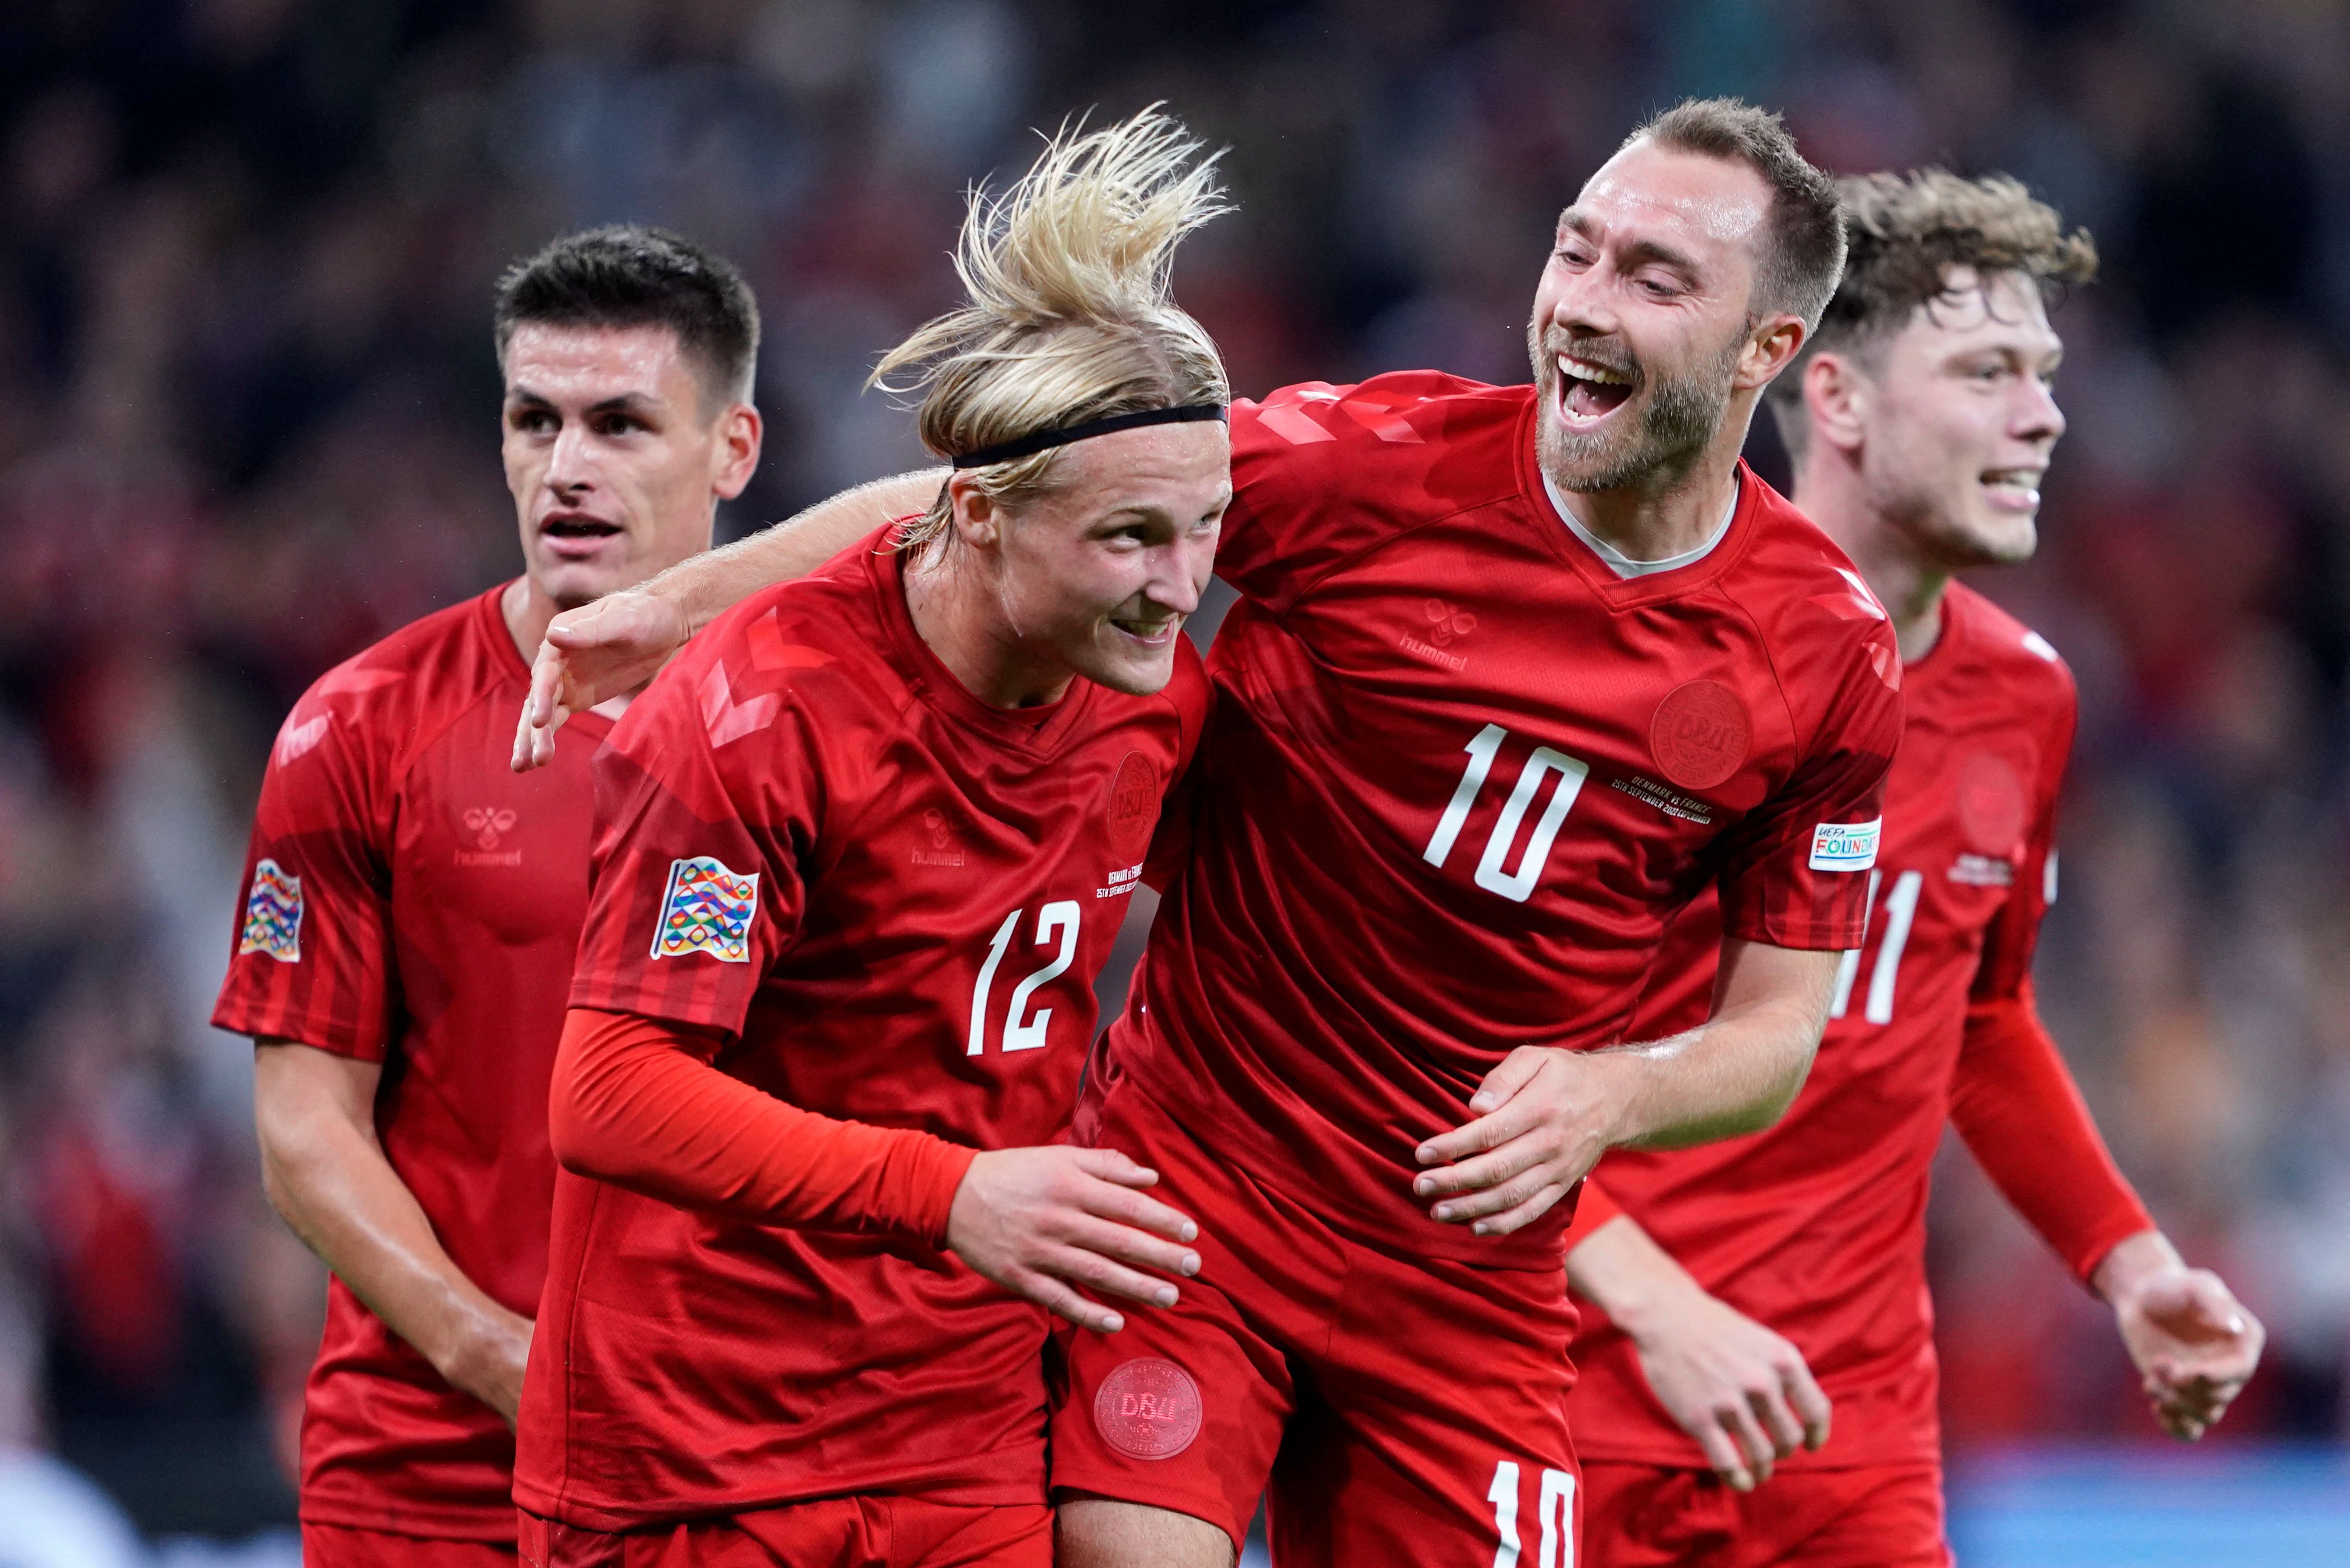 Denmark celebrate scoring vs France.